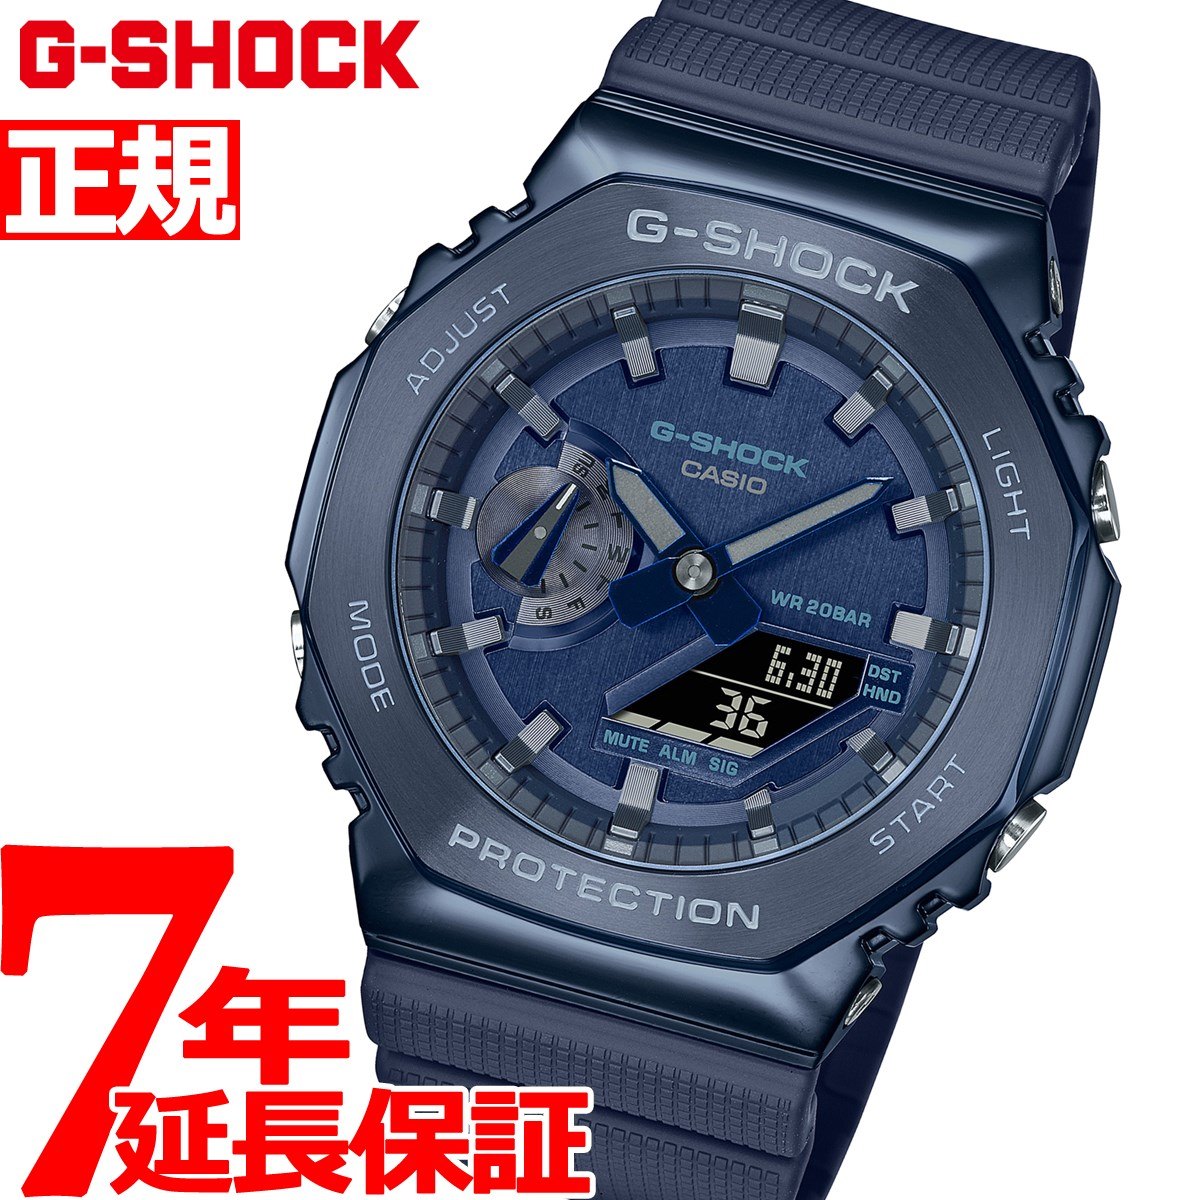 G-SHOCK メタル カシオ Gショック CASIO 腕時計 メンズ ネイビー GM